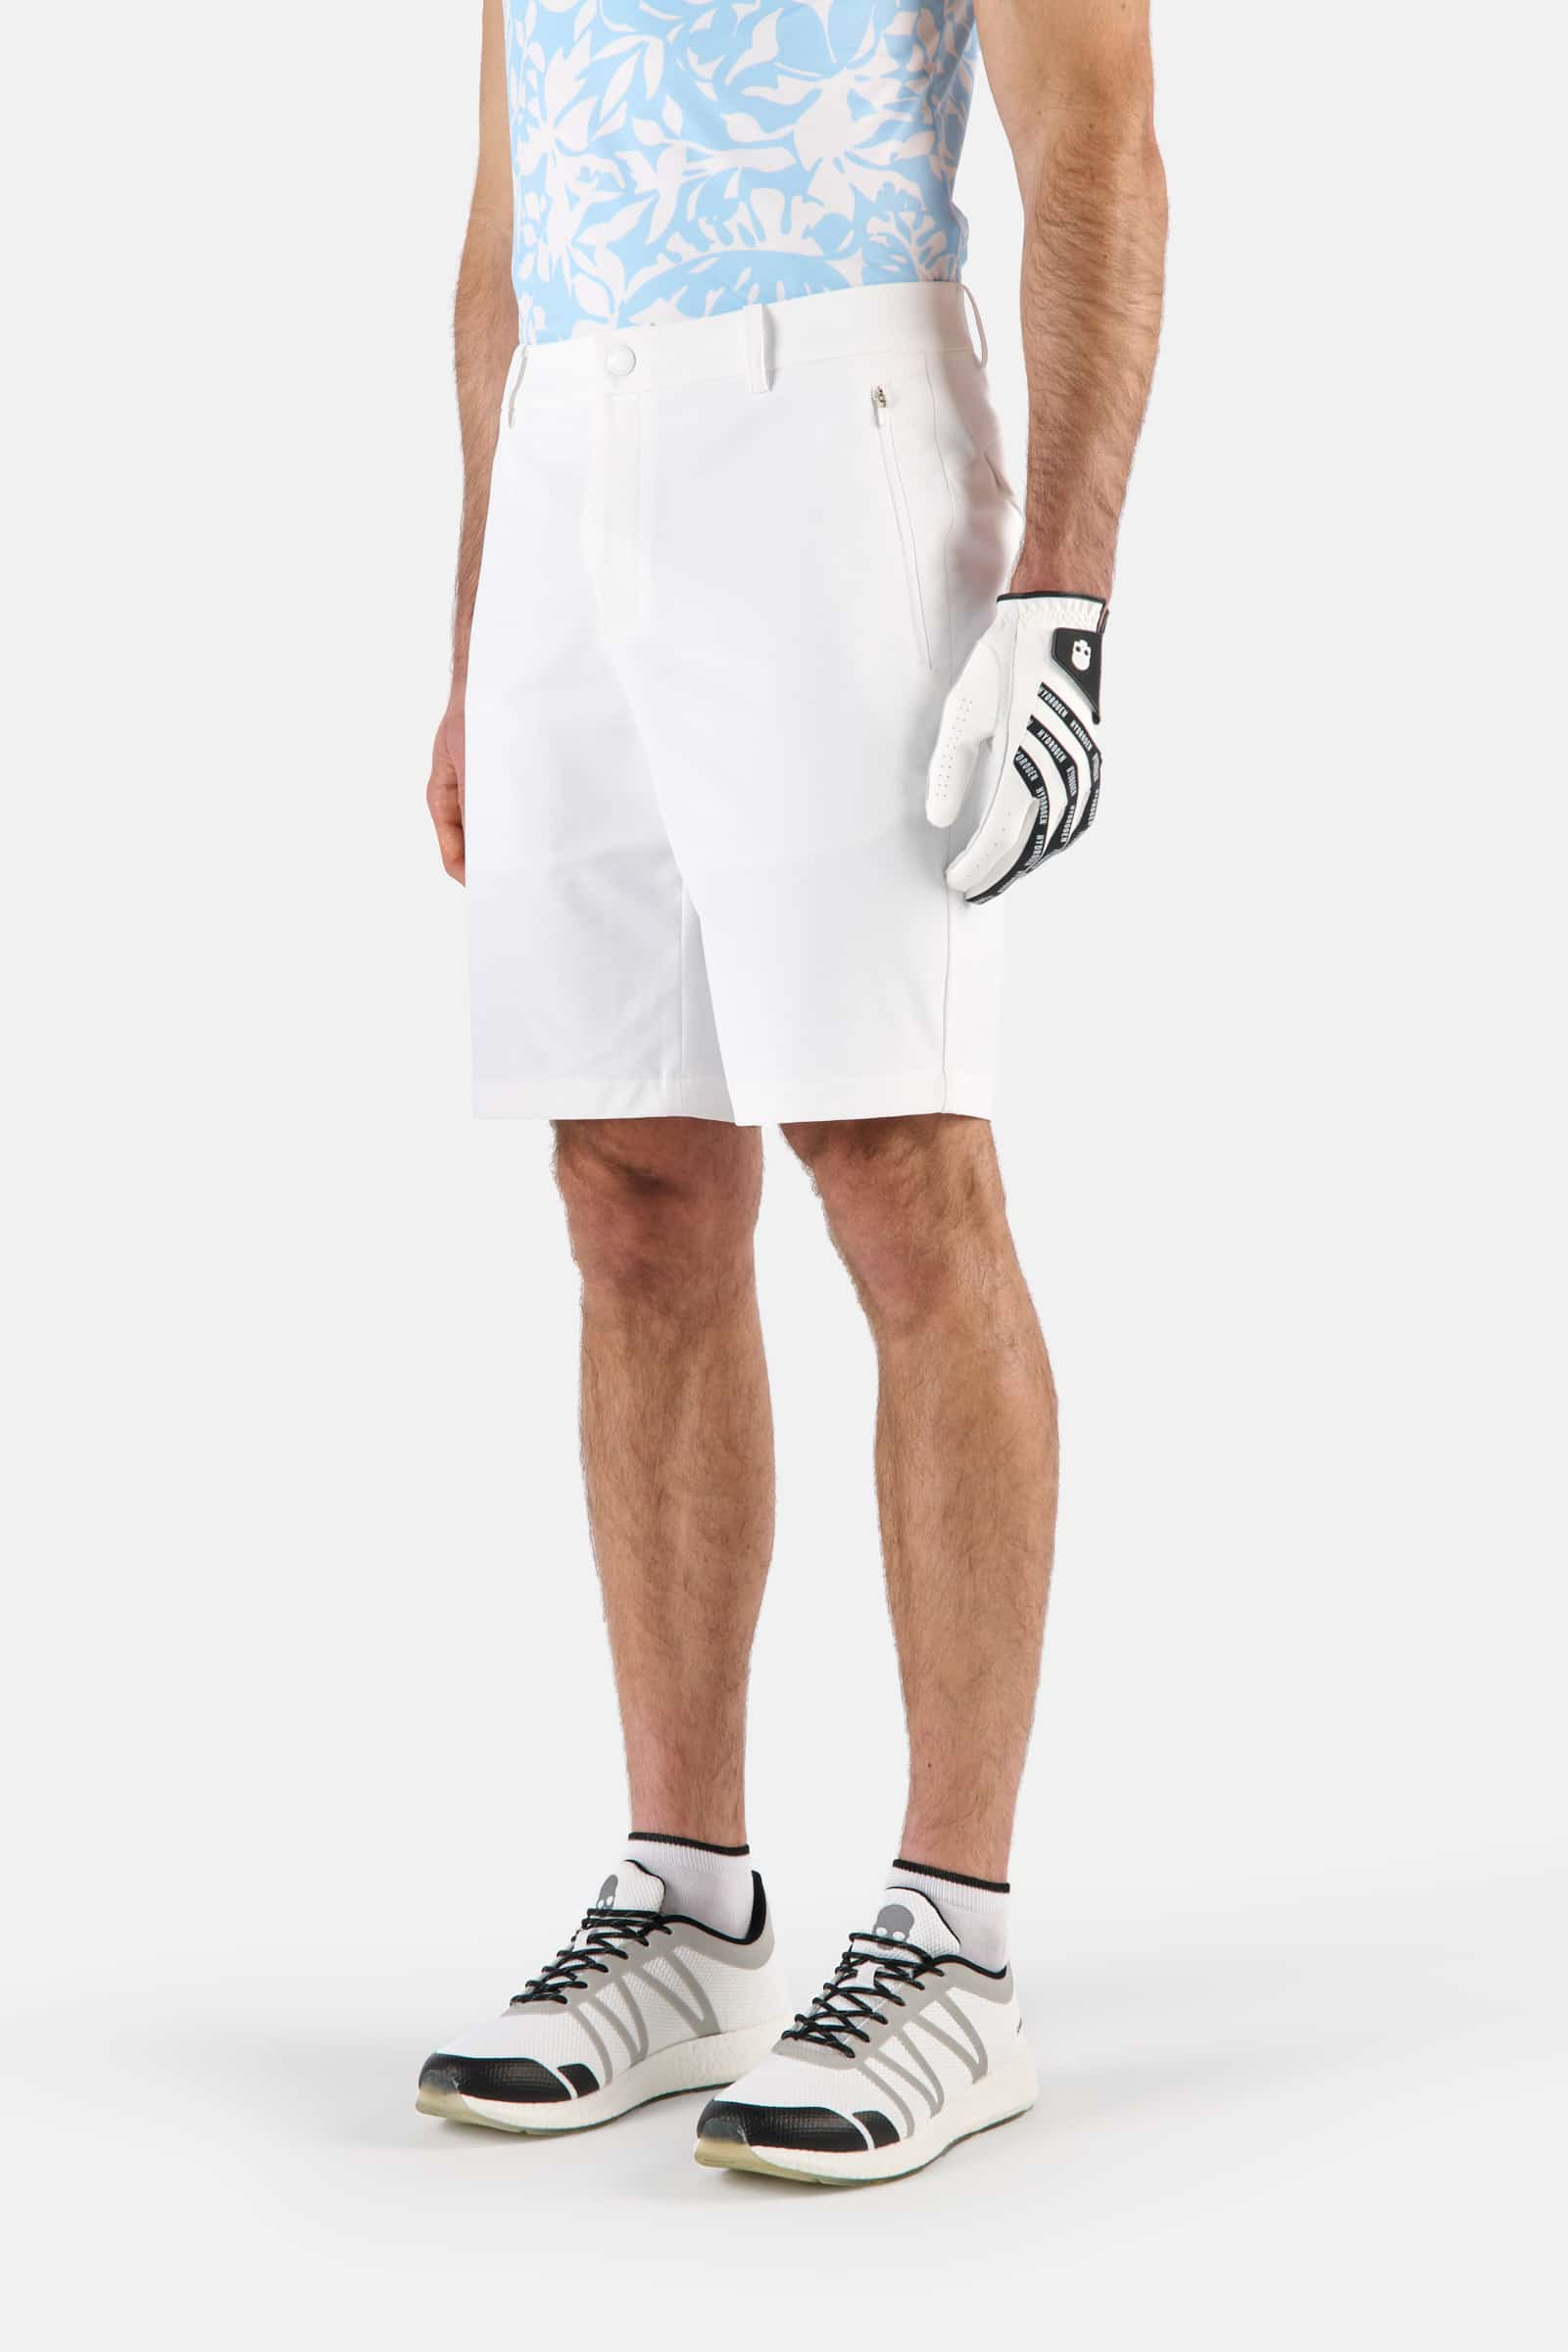 TECH SHORTS - WHITE - Hydrogen - Luxury Sportwear